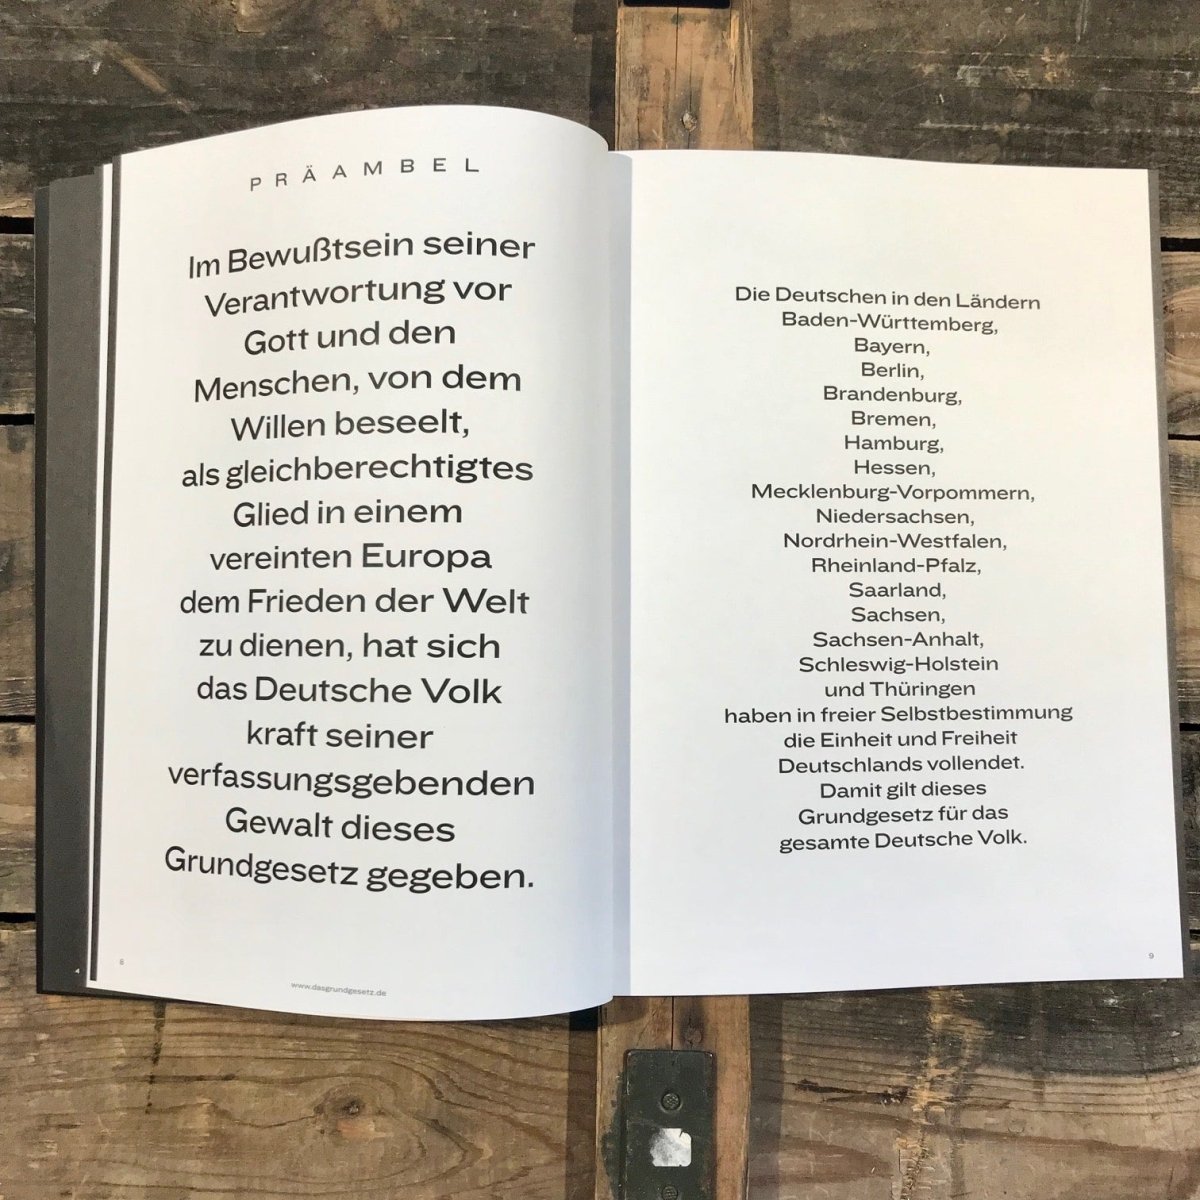 Deutschlands Grundgesetz als Magazin - Ankerherz Verlag